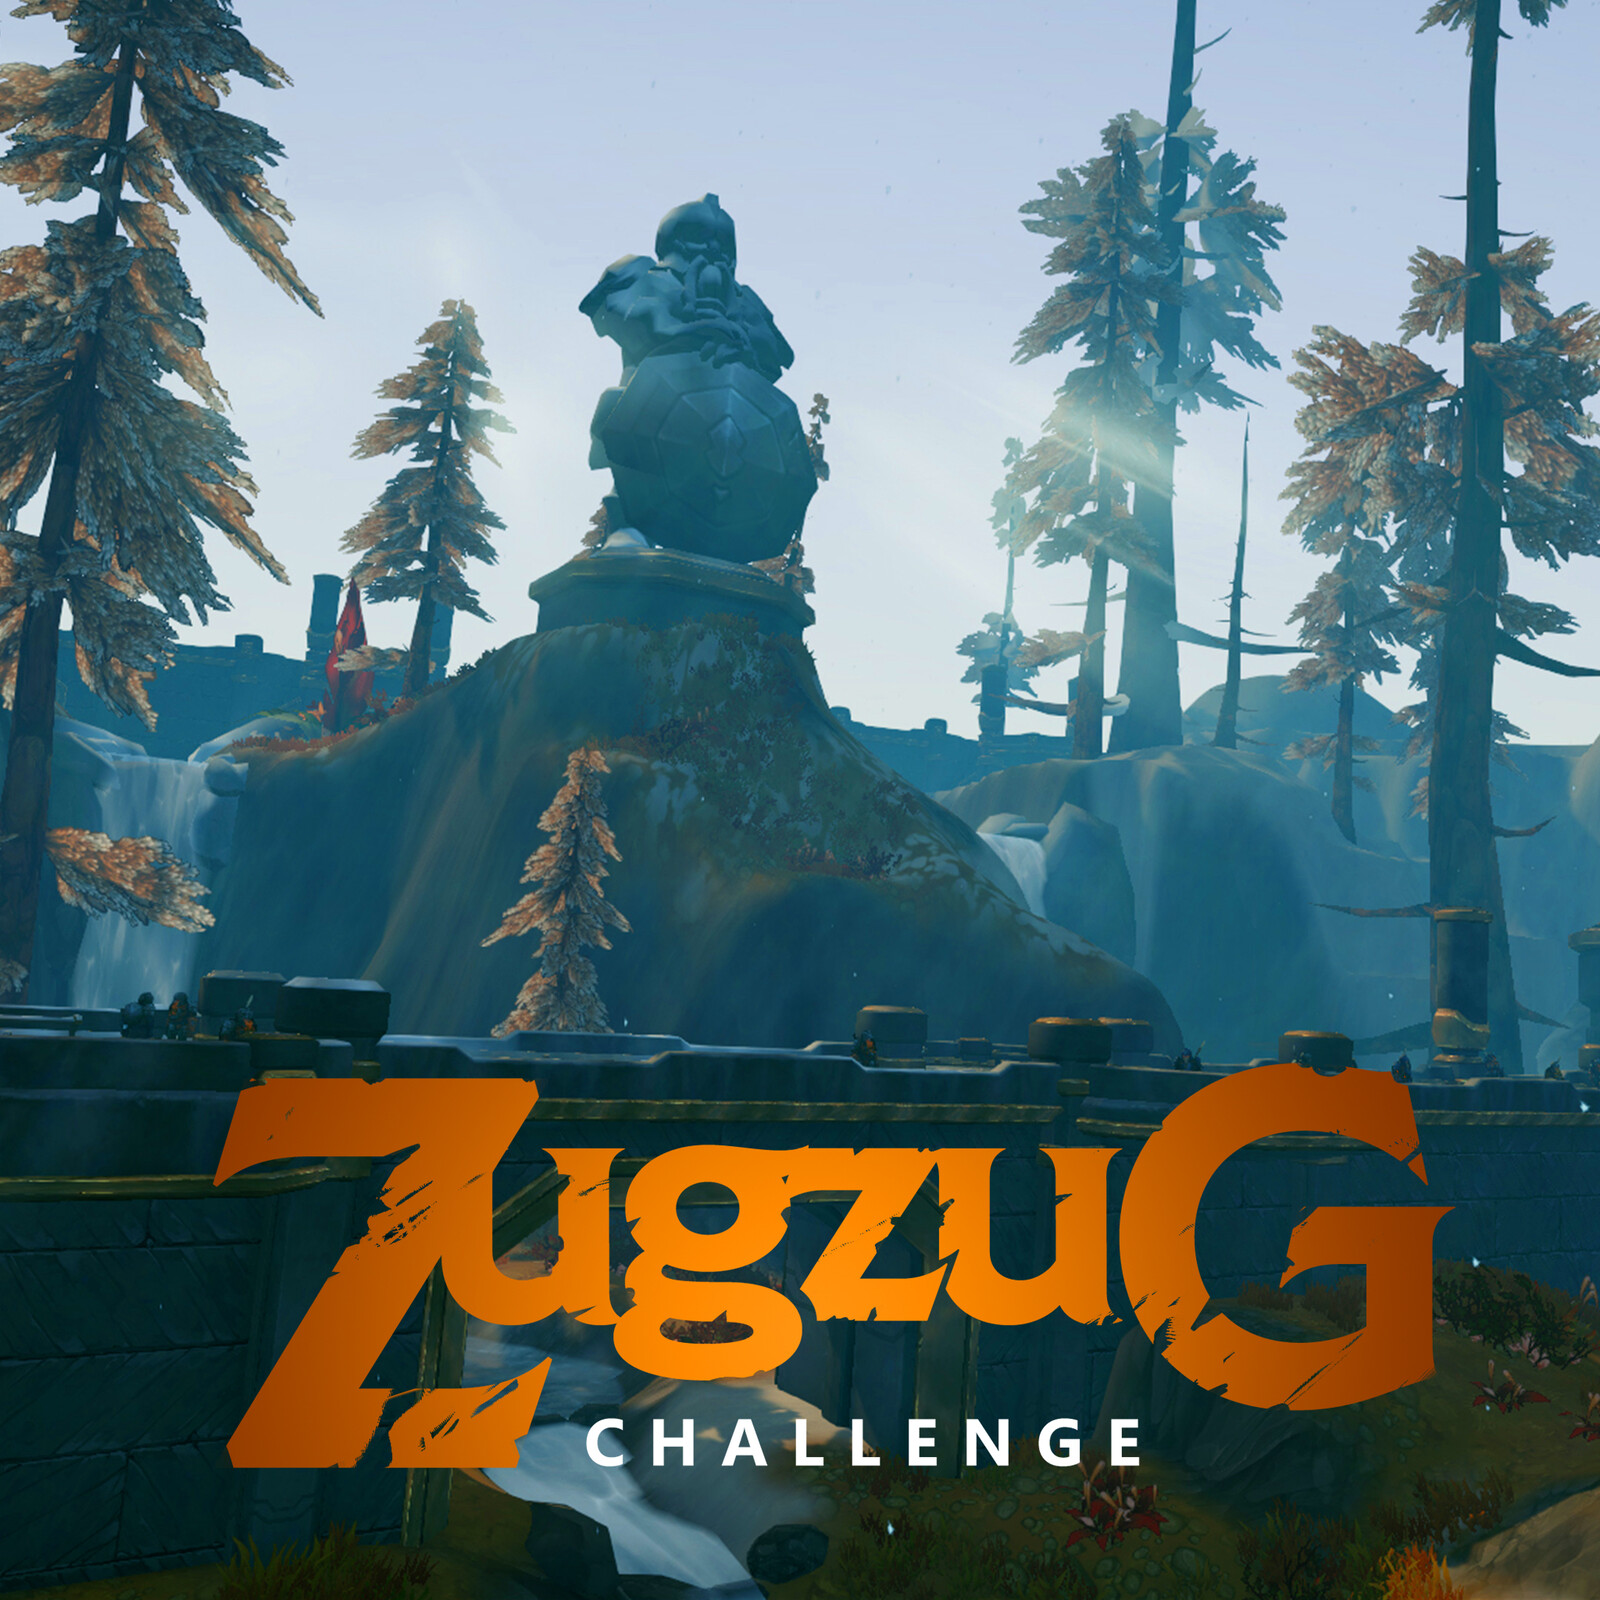 The stone path - ZugZug Art Challenge